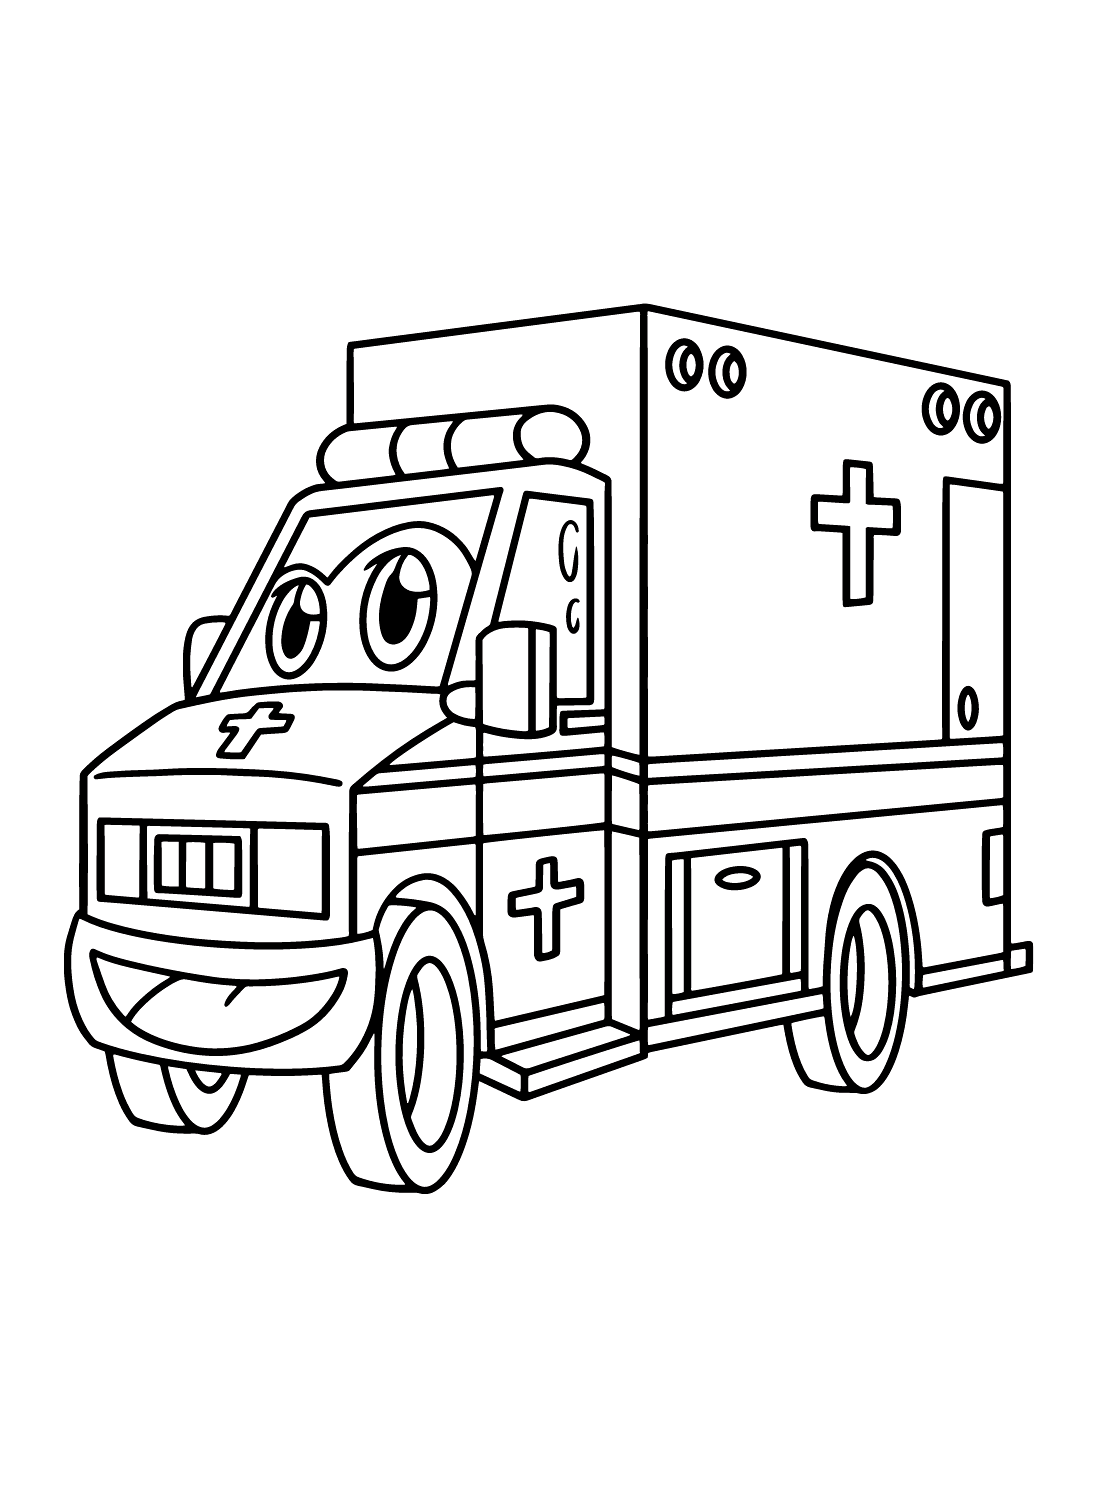 سيارة إسعاف الكرتون من سيارة إسعاف